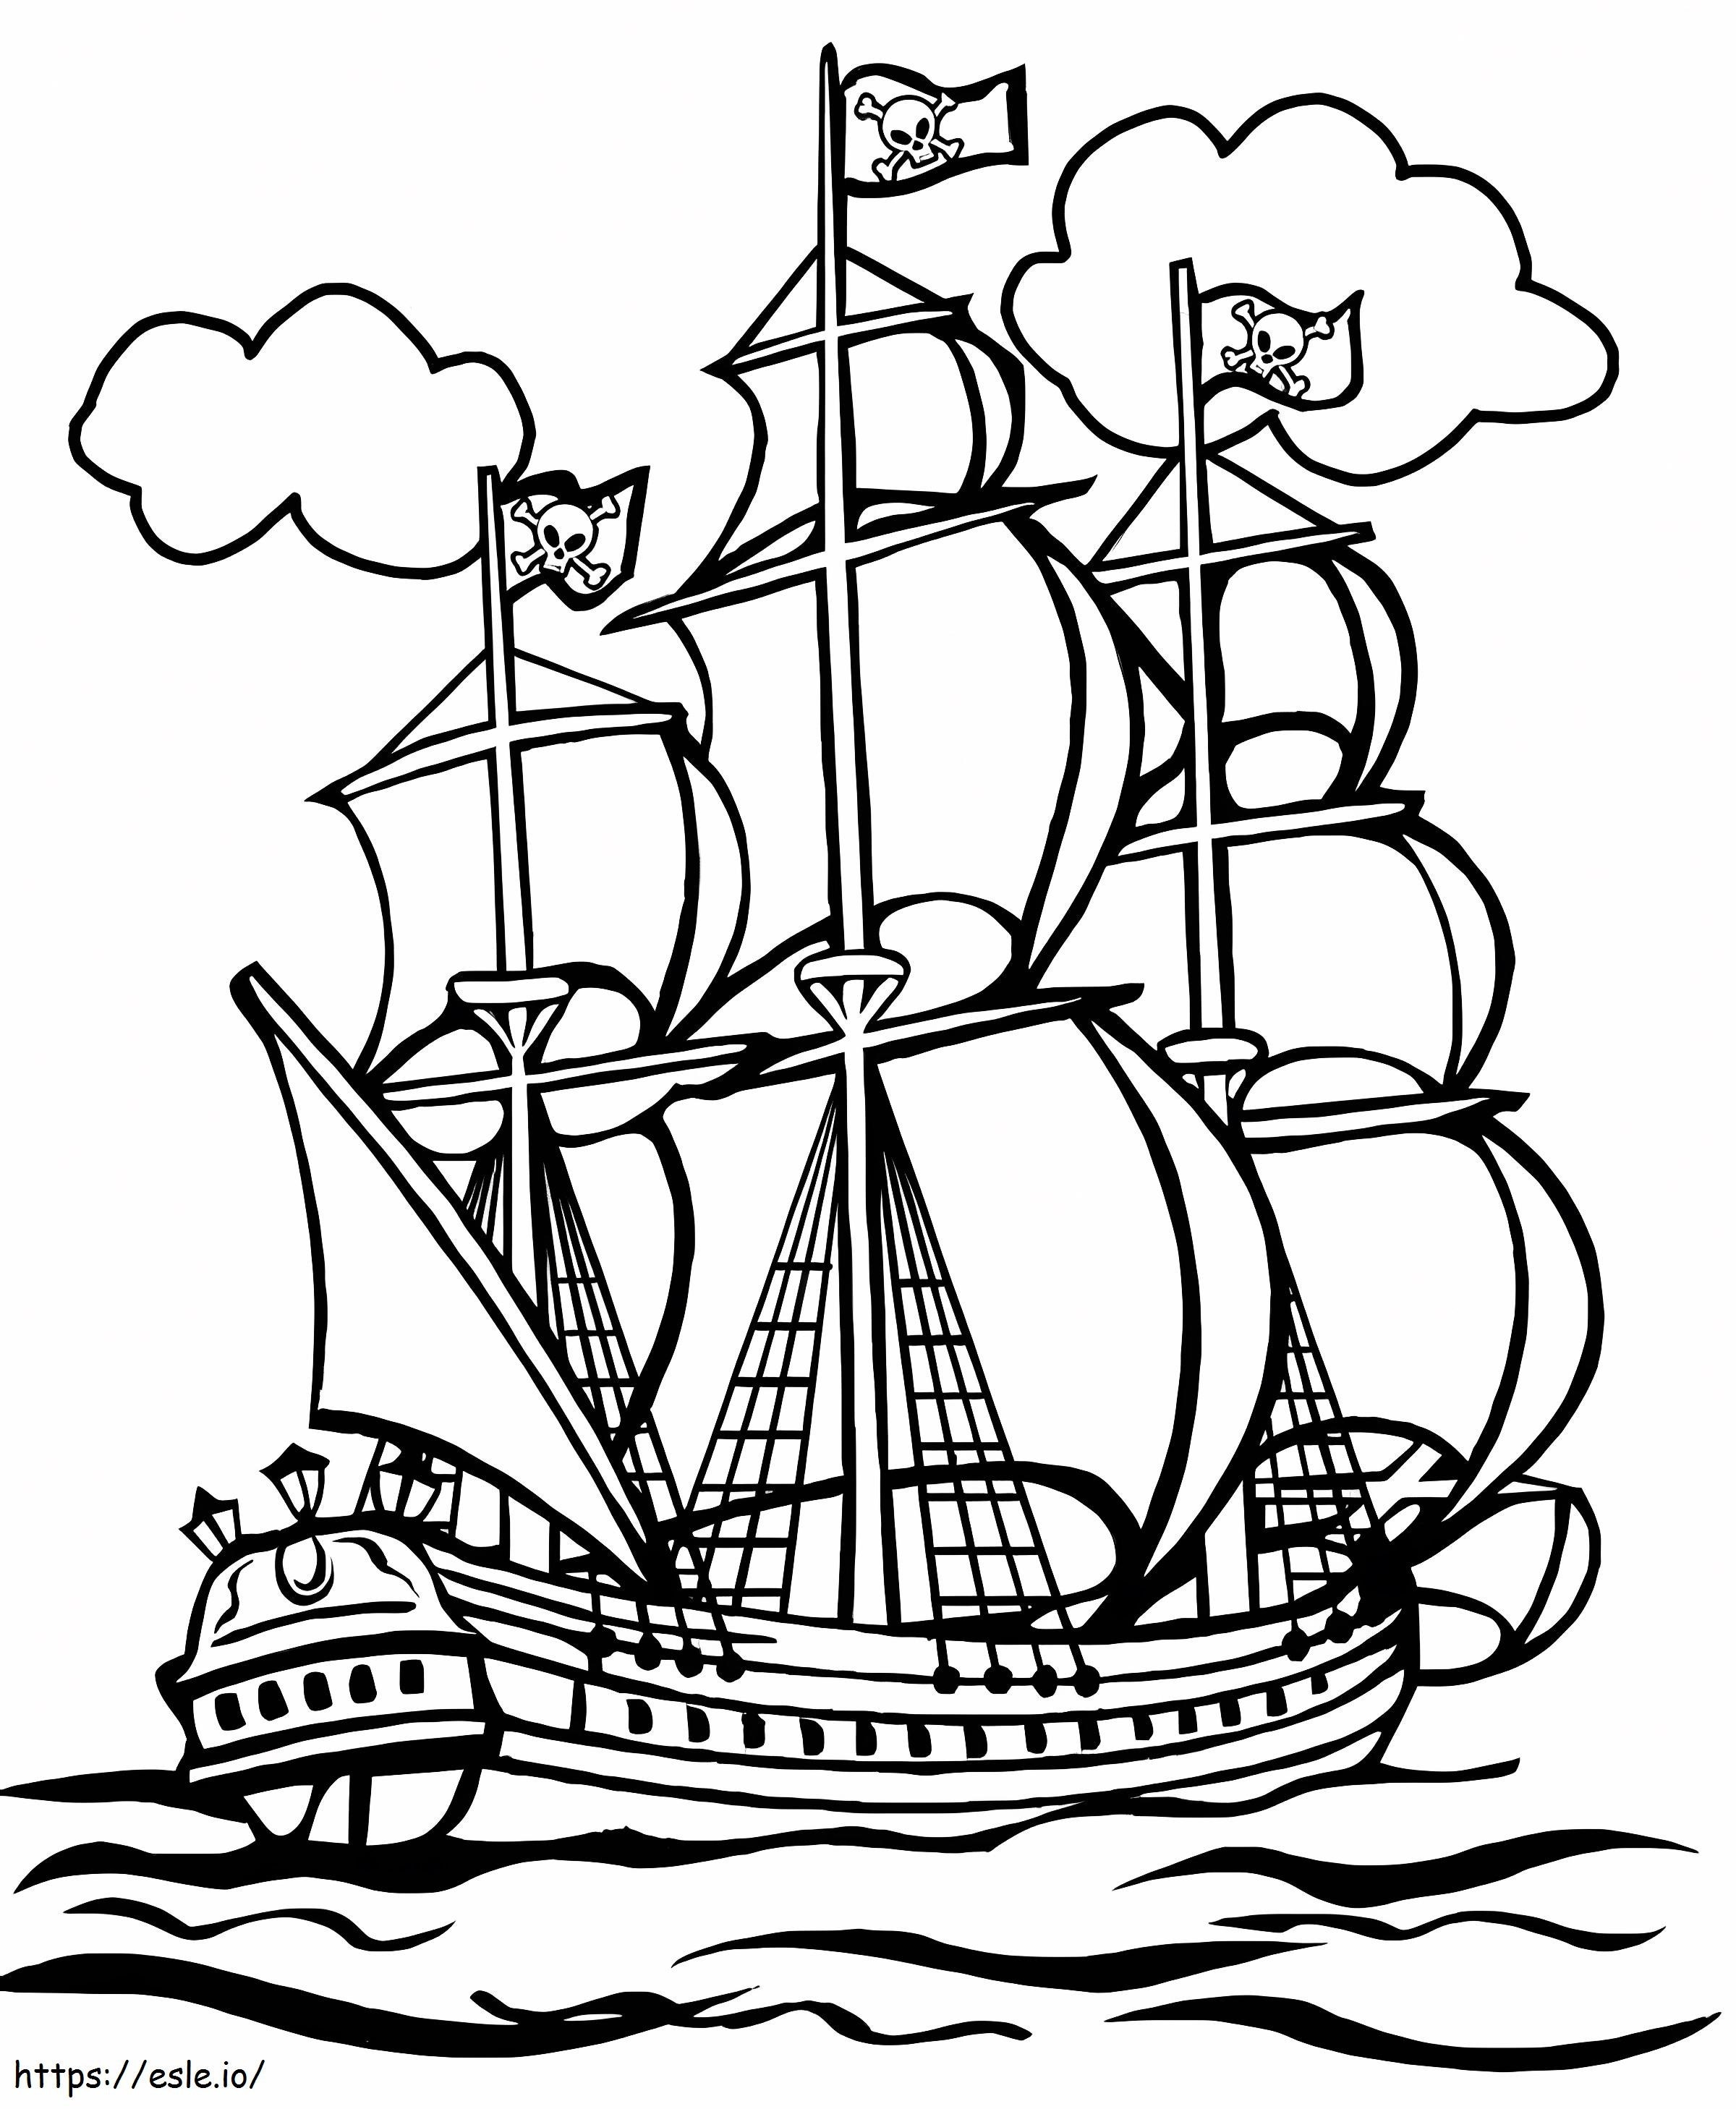 Piratenschiff ausmalbilder